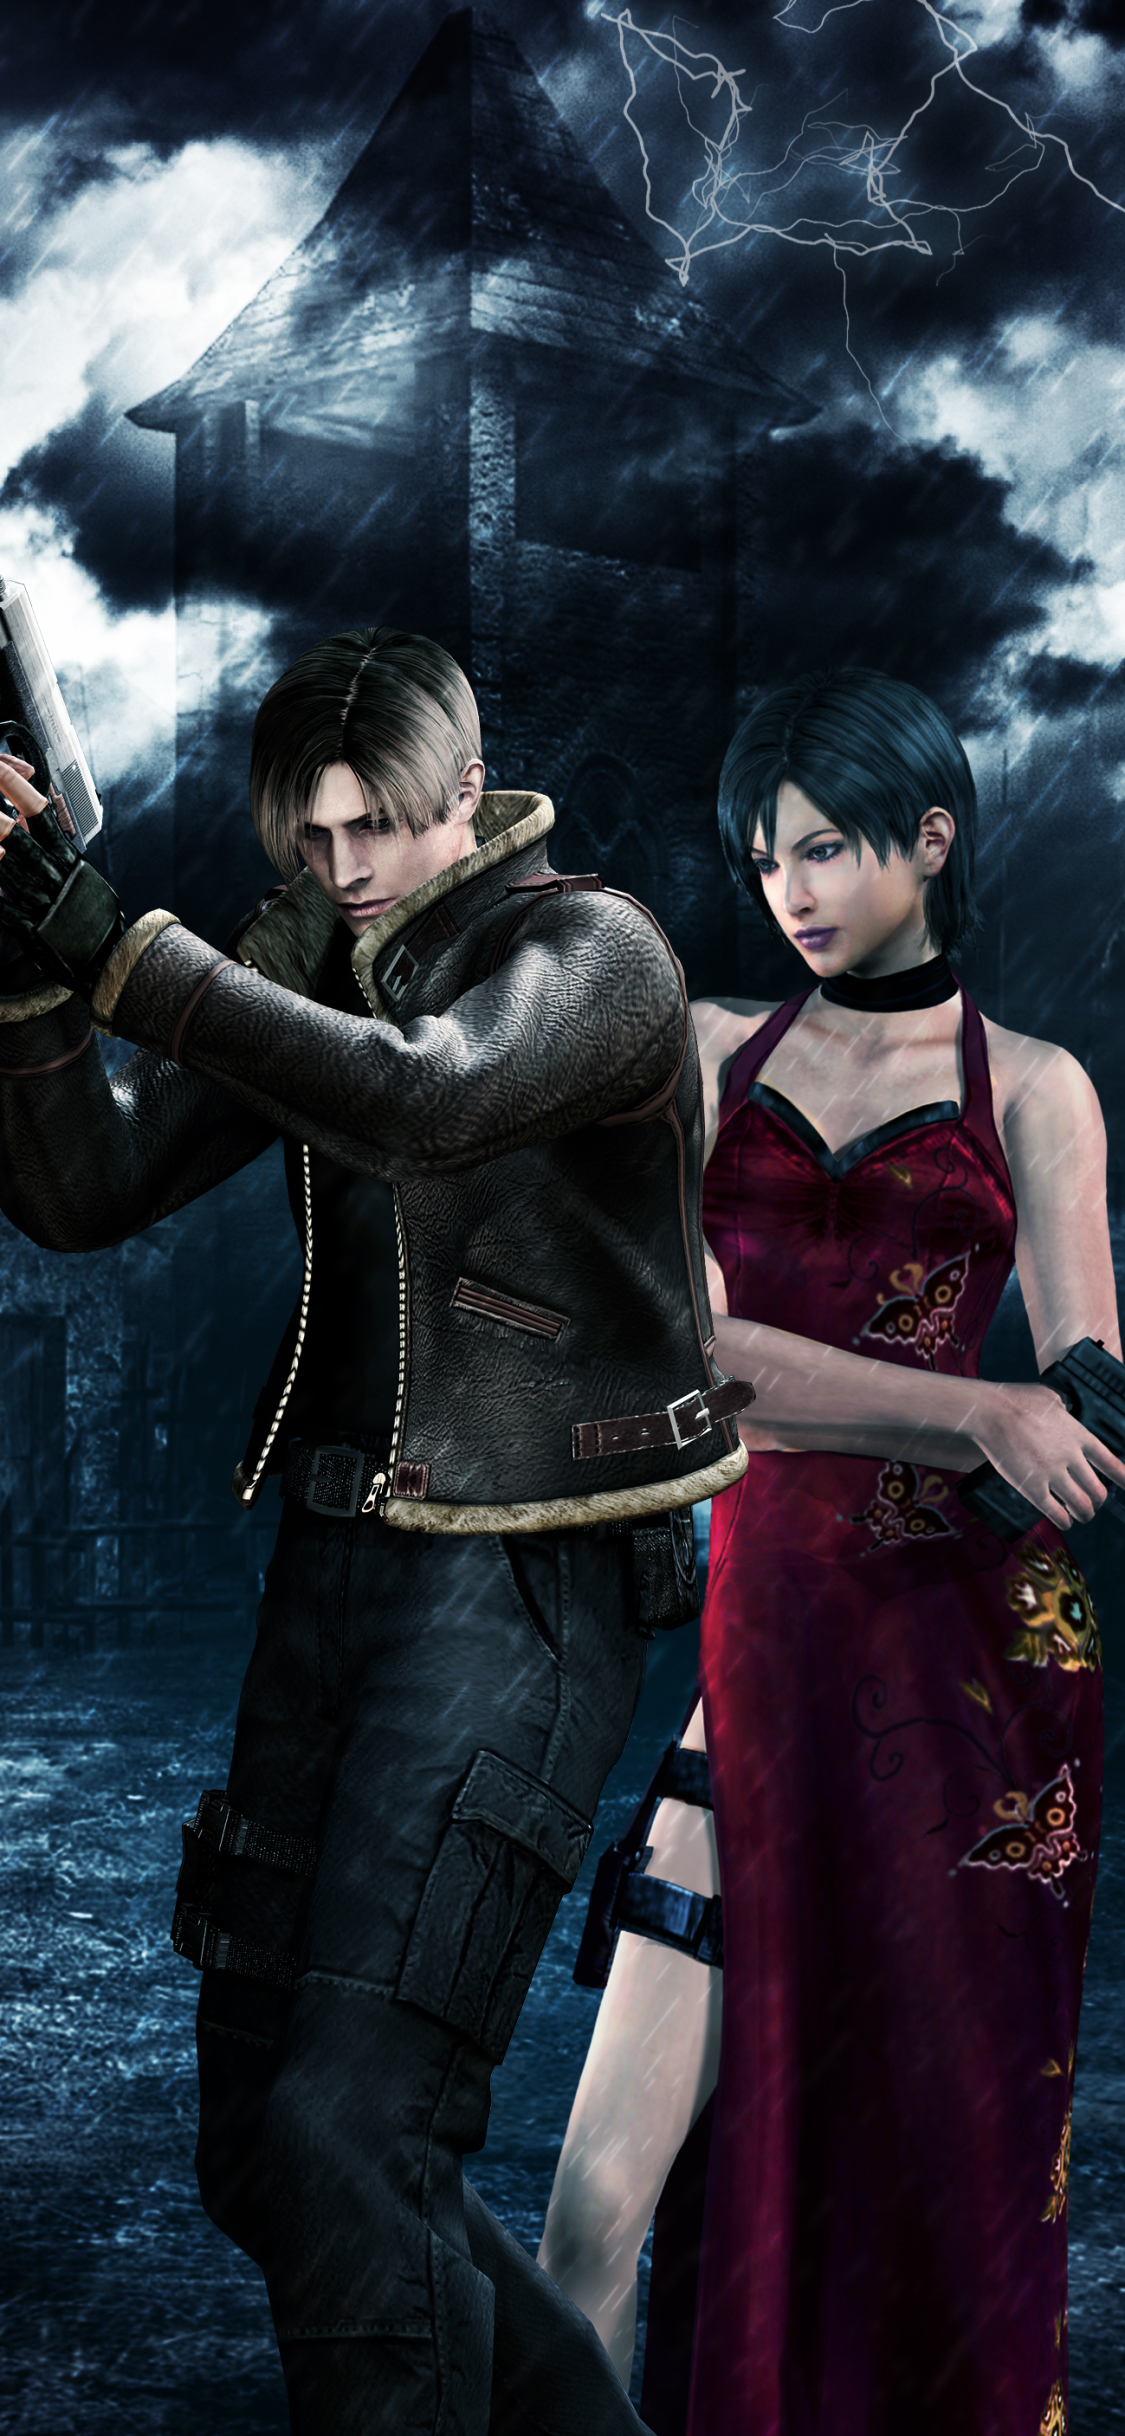 Download mobile wallpaper Resident Evil, Video Game, Leon S Kennedy, Resident Evil 4 for free.